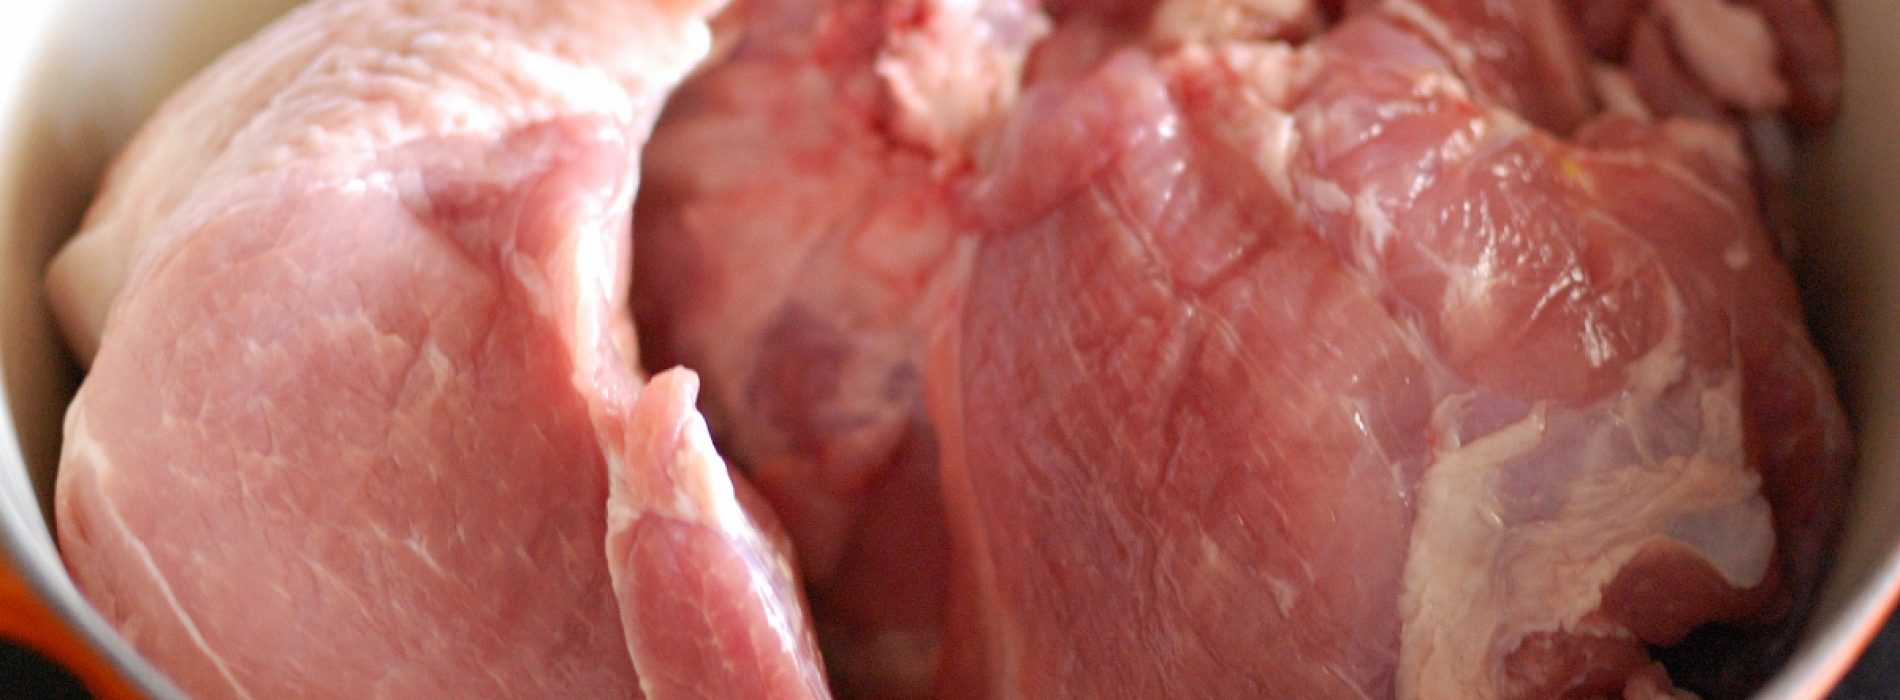 Wat het eten van varkensvlees doet in je lichaam – [Video]